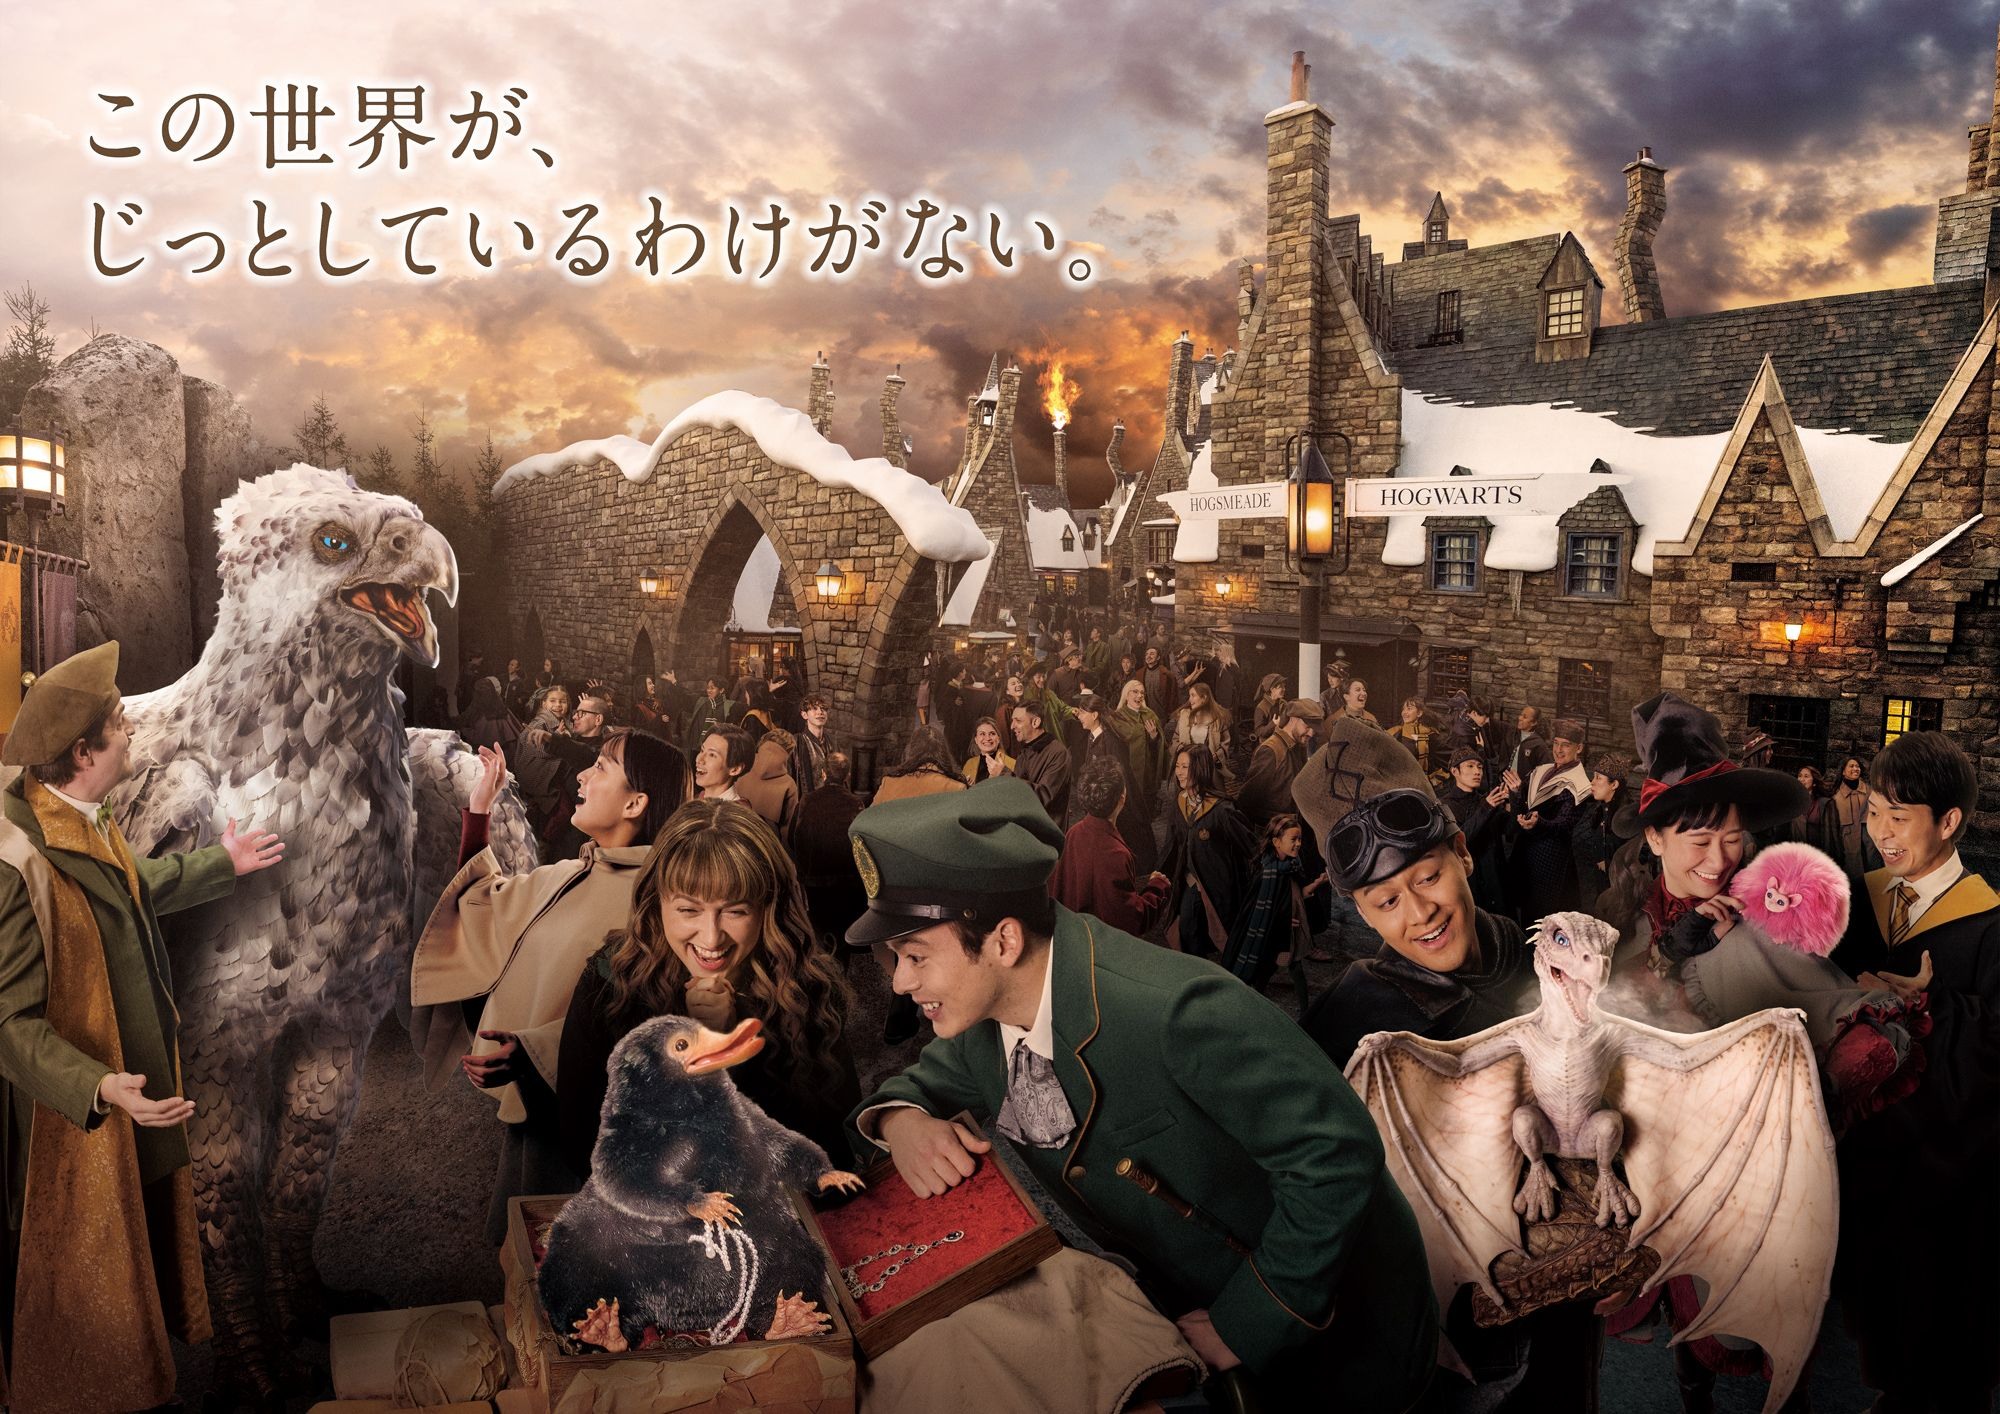 今年春天日本环球影城哈利波特园区将推出特别企划「与魔法生物的邂逅」插图